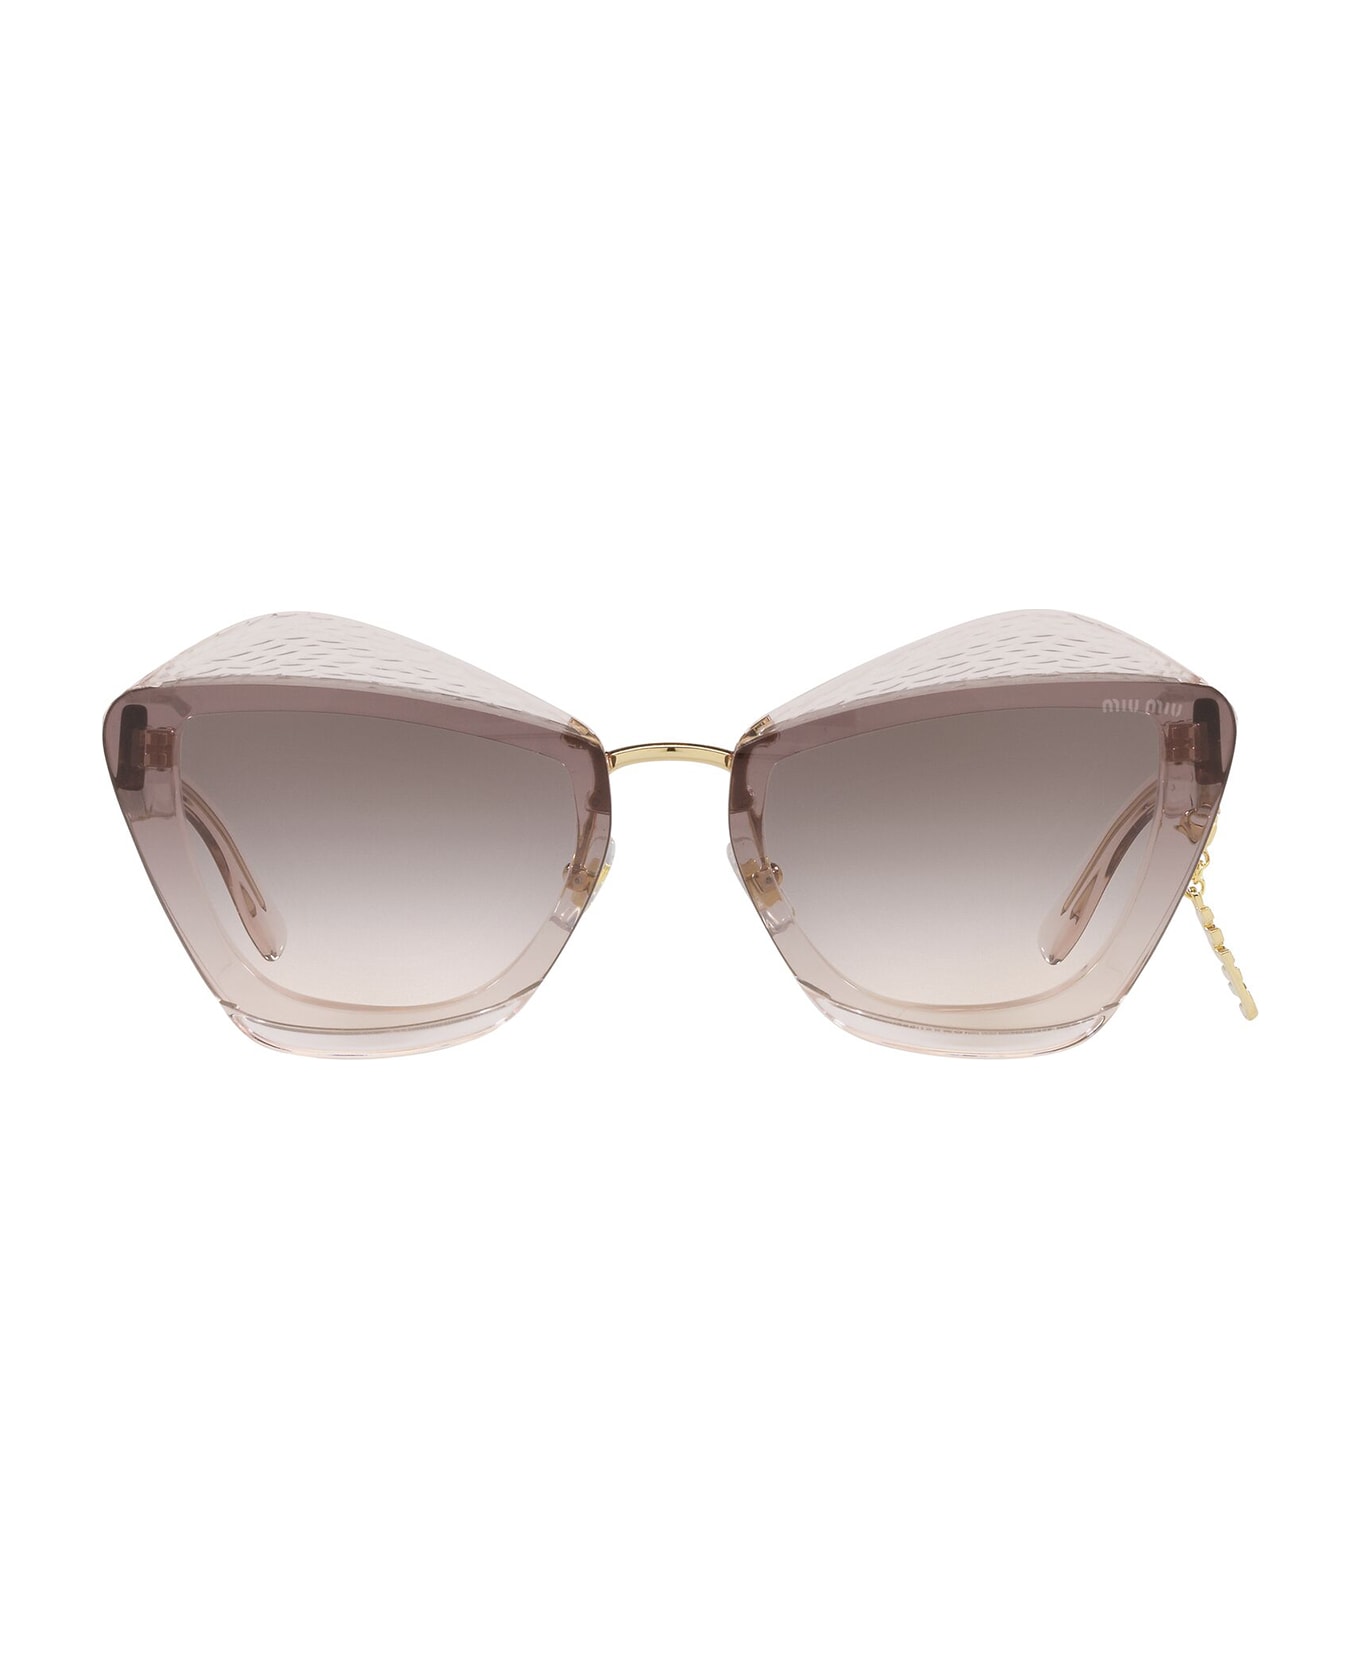 Miu Miu Eyewear Mu 01xs Light Brown Transparent Sunglasses - Light Brown Transparent